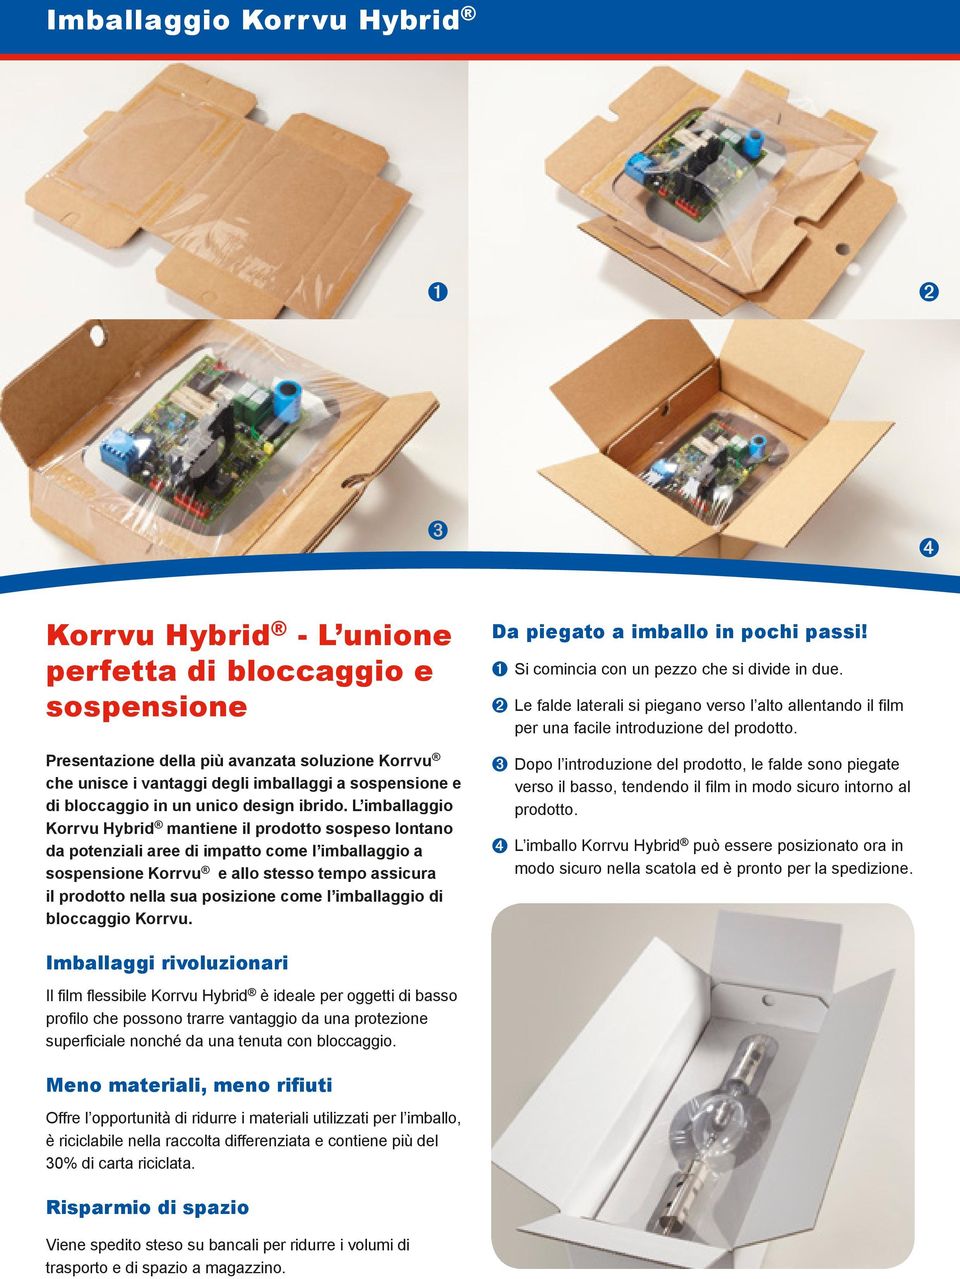 L imballaggio Korrvu Hybrid mantiene il prodotto sospeso lontano da potenziali aree di impatto come l imballaggio a sospensione Korrvu e allo stesso tempo assicura il prodotto nella sua posizione